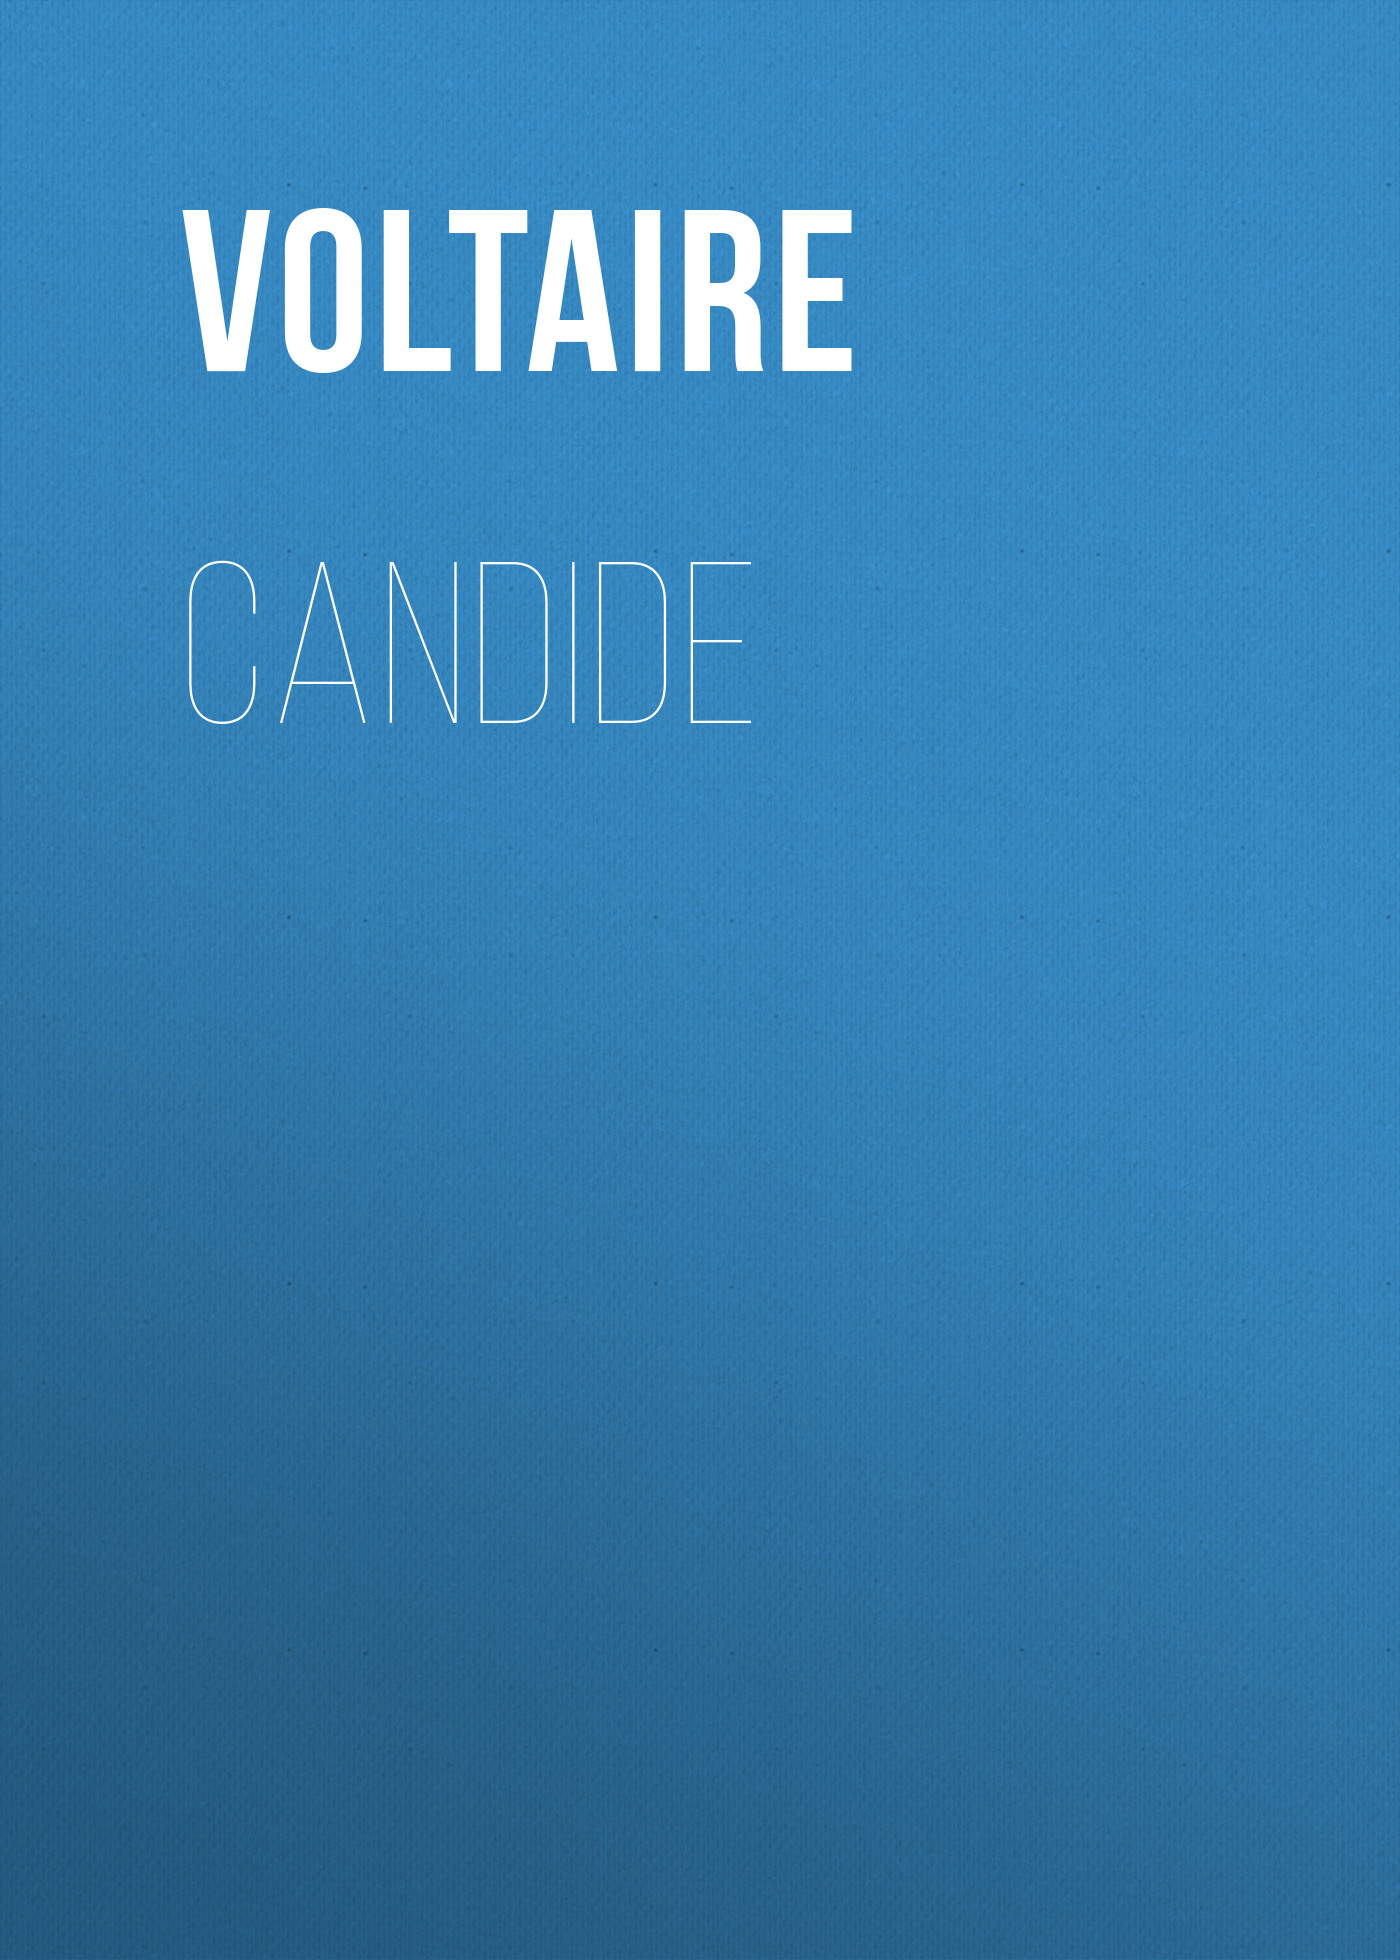 Книга Candide из серии , созданная  Voltaire, может относится к жанру Литература 18 века, Зарубежная классика. Стоимость электронной книги Candide с идентификатором 25560580 составляет 0 руб.